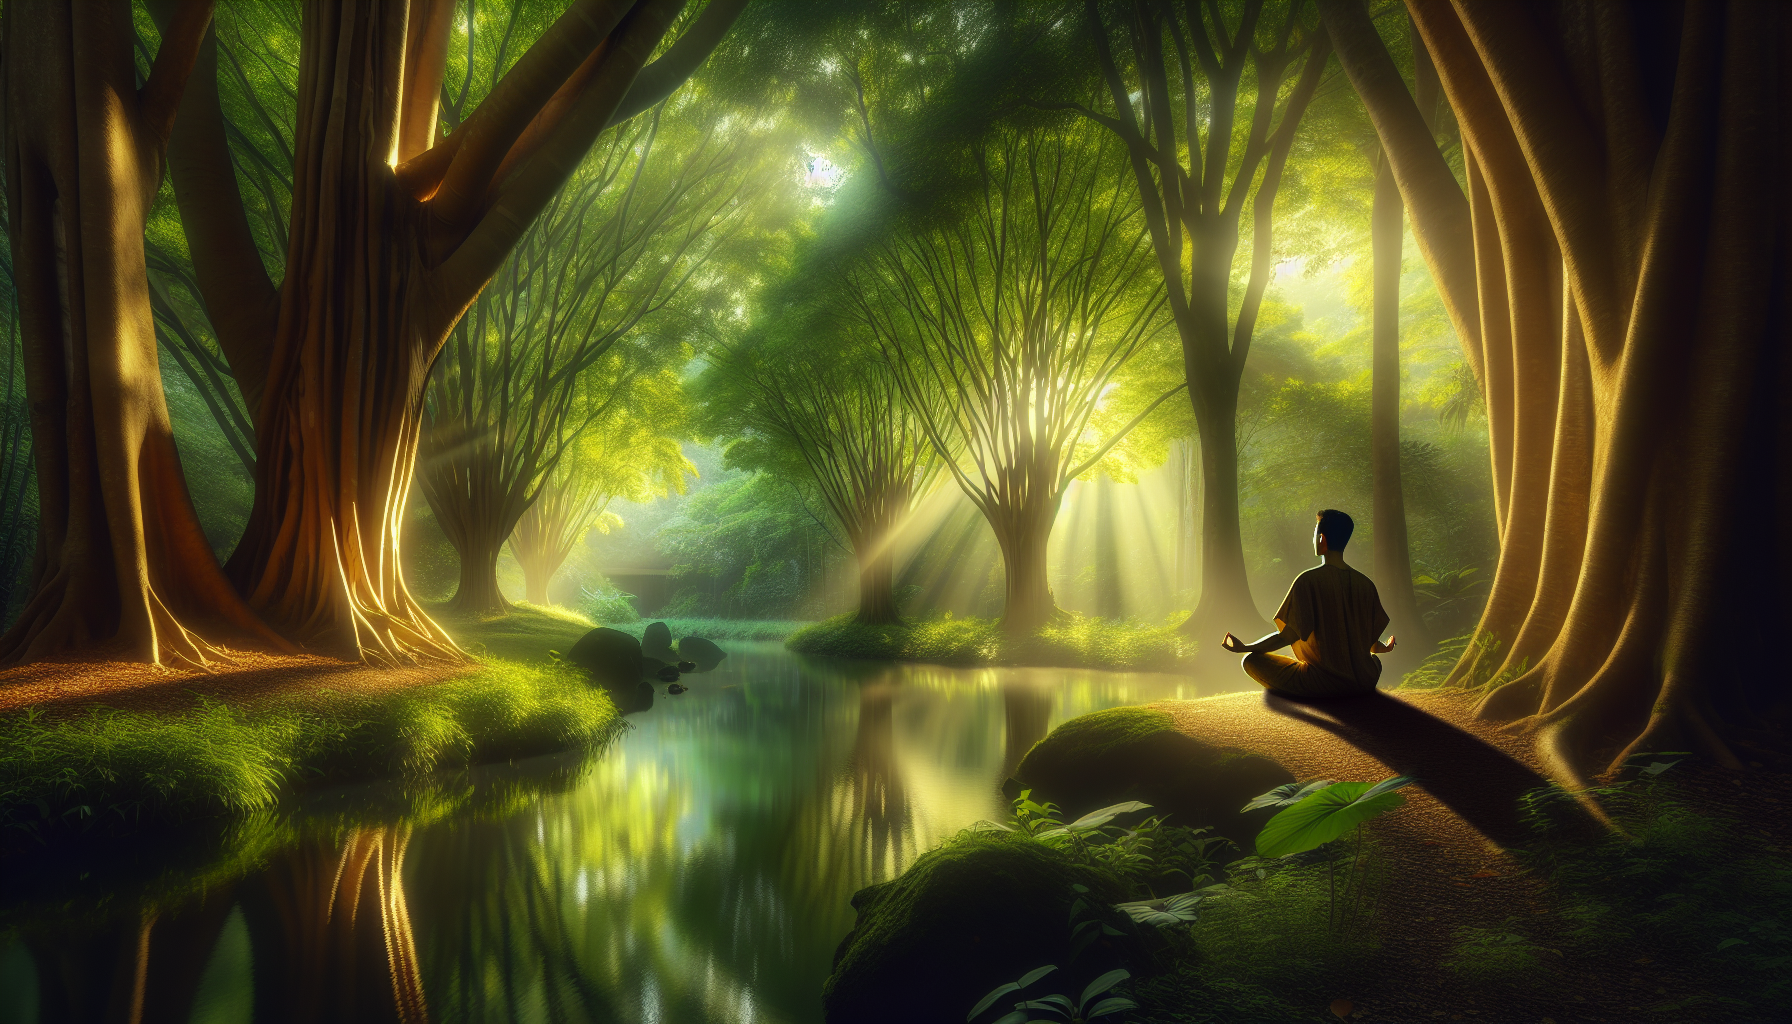 découvrez les secrets pour cultiver un esprit zen et apaiser votre quotidien. apprenez des techniques de relaxation inspirées des hommes les plus sereins pour transformer votre vie et atteindre un état de calme intérieur. suivez nos conseils et rejoignez la voie de la tranquillité !